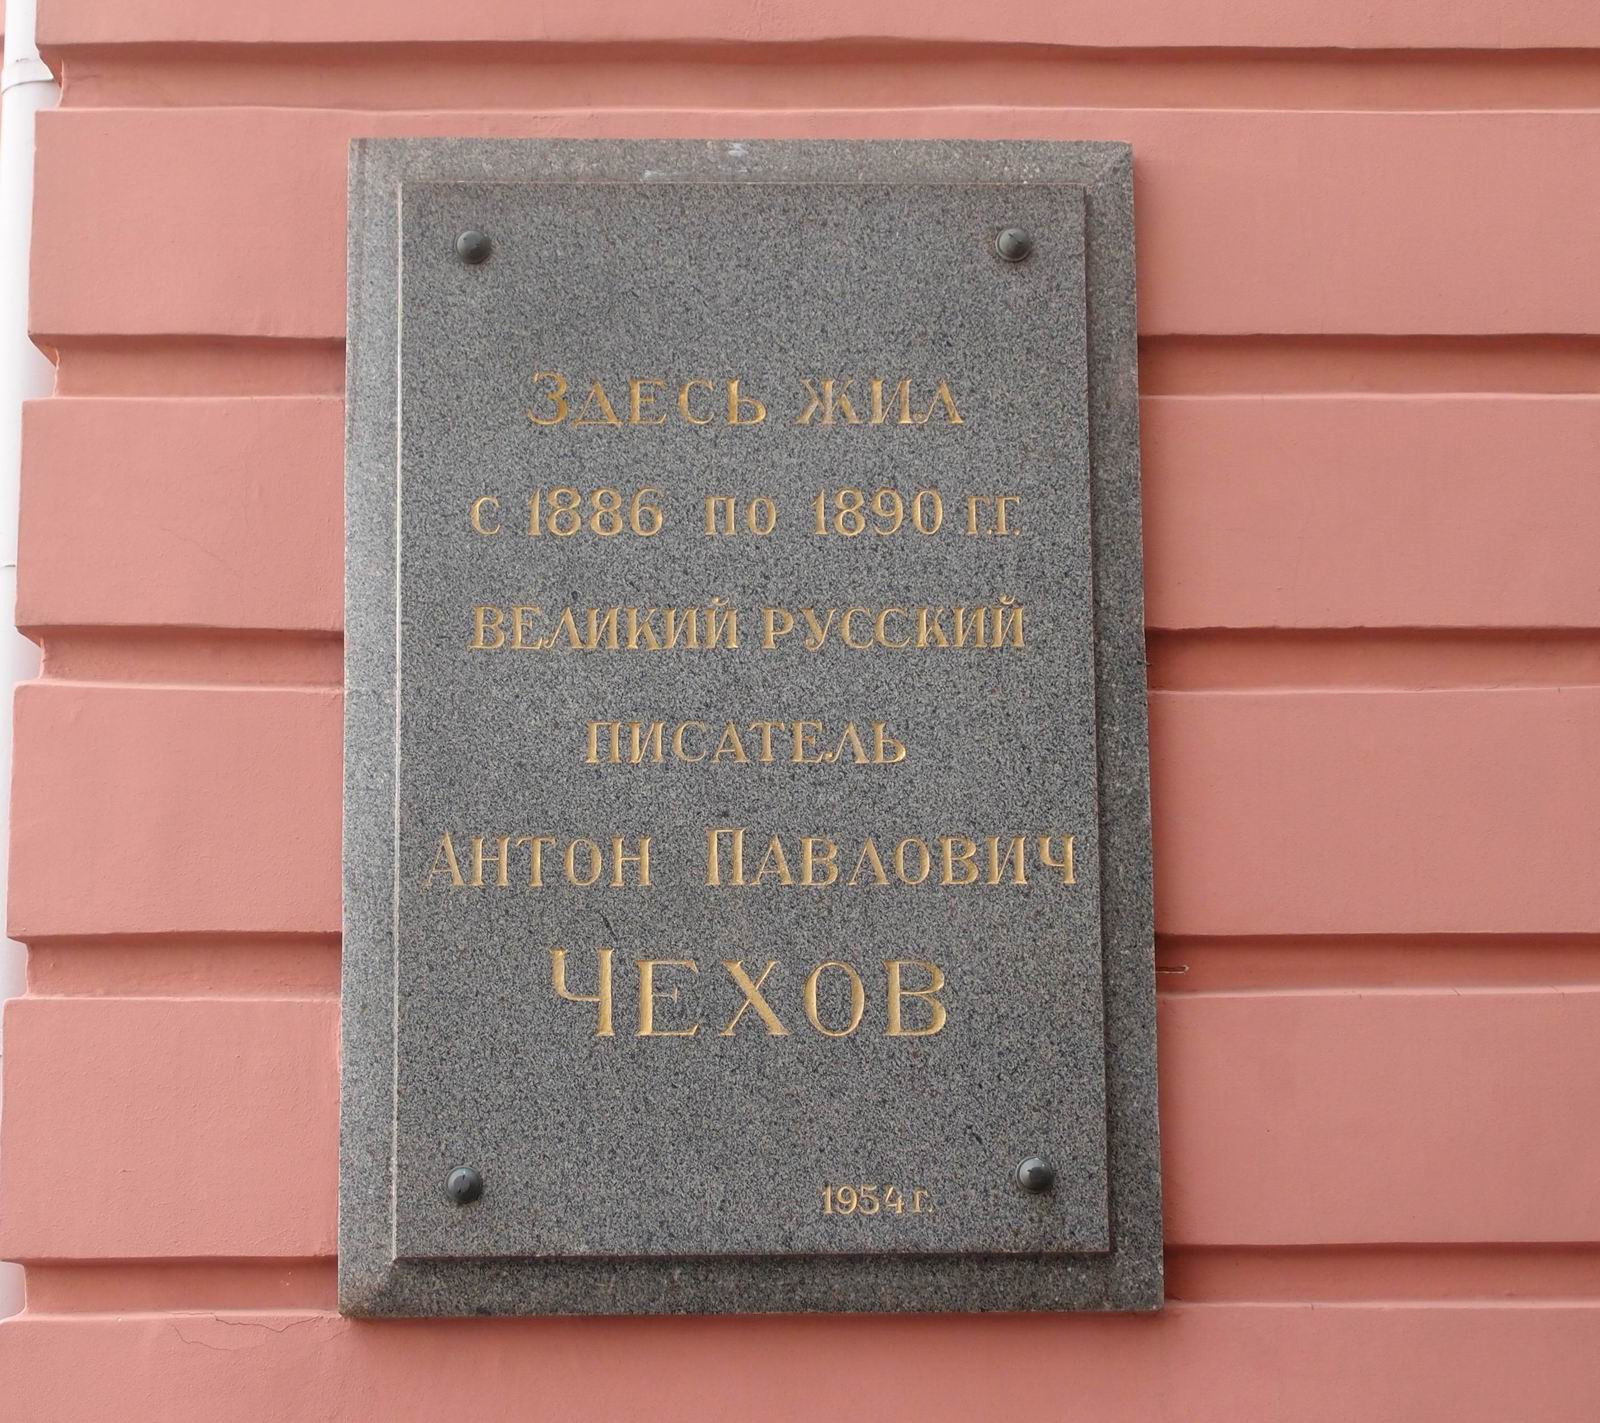 Мемориальная доска Чехову А.П. (1860–1904), арх. Л.А.Ястржембский, на Садовой-Кудринской улице, дом 6, открыта 14.7.1954.